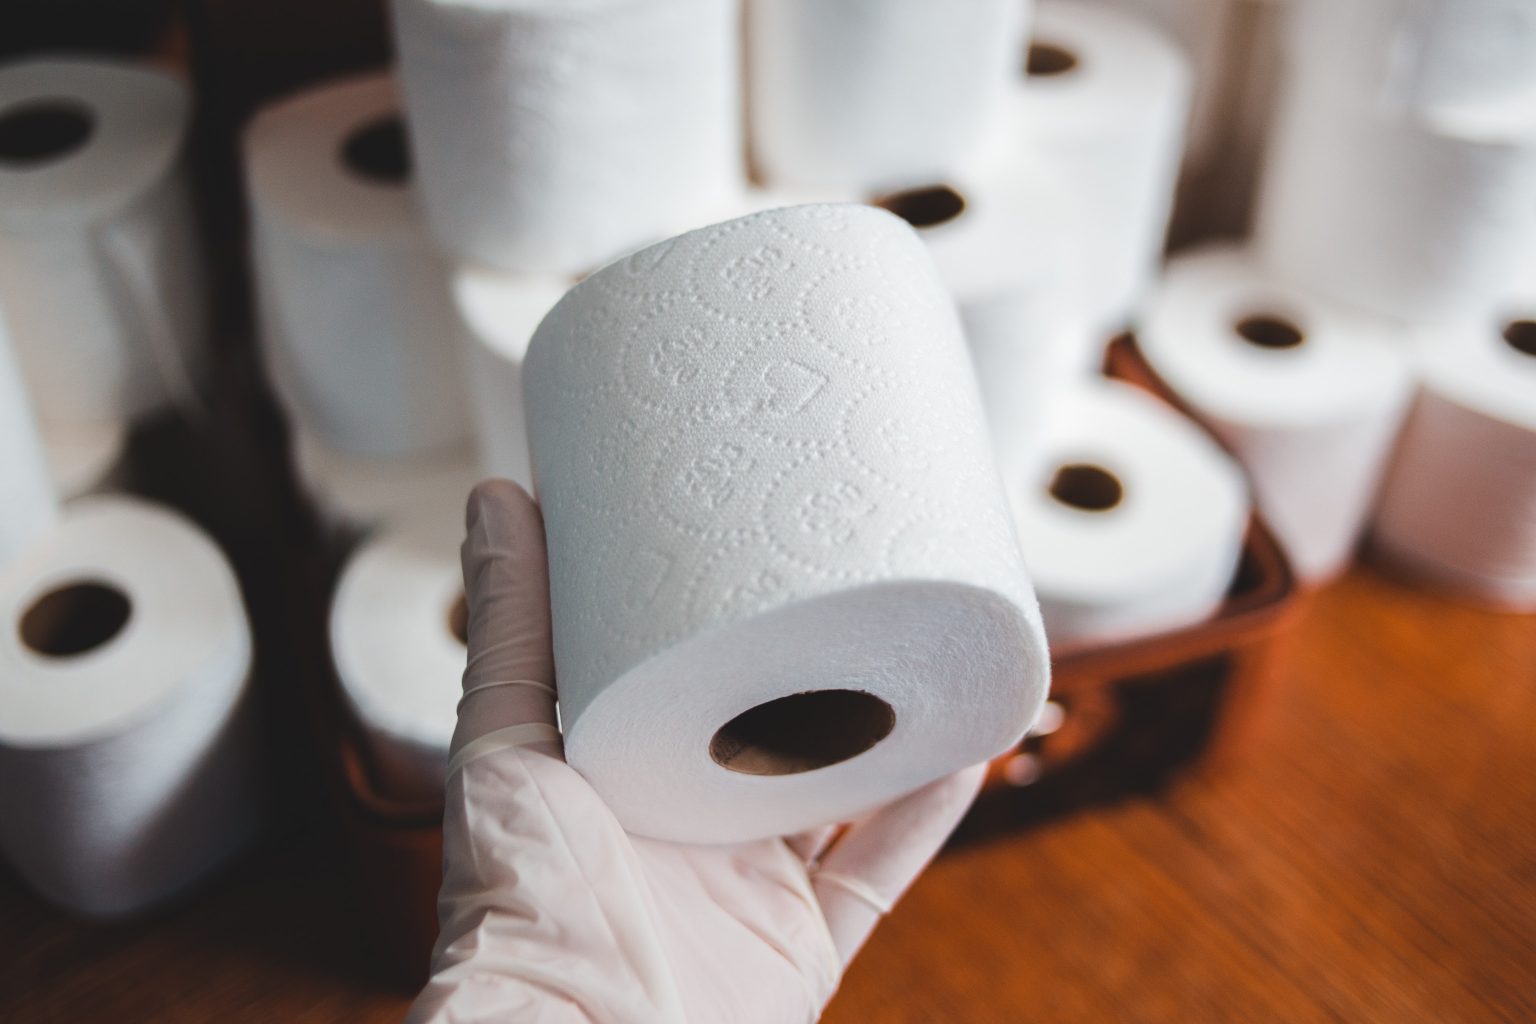 48 Rollen Presto! 4-lagiges Toilettenpapier (12 x 4 x 160 Blätter) für 15€  (statt 19€)